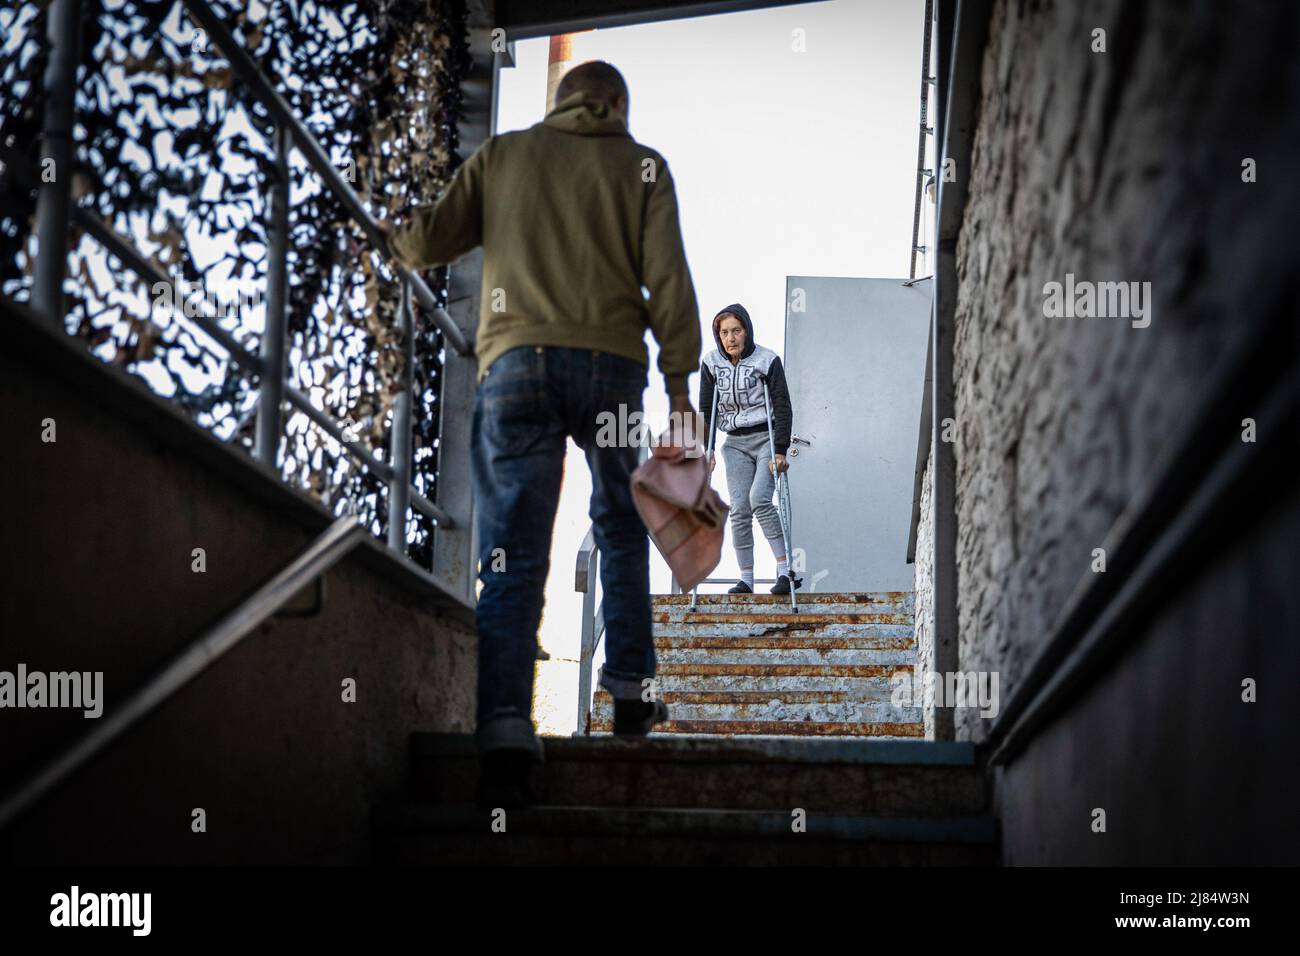 Zaporizhzhia, Ucrania. 11th de mayo de 2022. Una señora con discapacidades para caminar vista fuera de un refugio de refugiados subterráneo. Se han establecido refugios temporales para refugiados en Zaporizhia, ya que la ciudad ha estado recibiendo constantemente refugiados que huyen de territorios controlados por Rusia en el este y el sur del país. Según las Naciones Unidas, se cree que más de 11 millones de personas han huido de sus hogares en Ucrania desde que comenzó el conflicto, con 7,7 millones de personas desplazadas dentro de su patria. Crédito: SOPA Images Limited/Alamy Live News Foto de stock